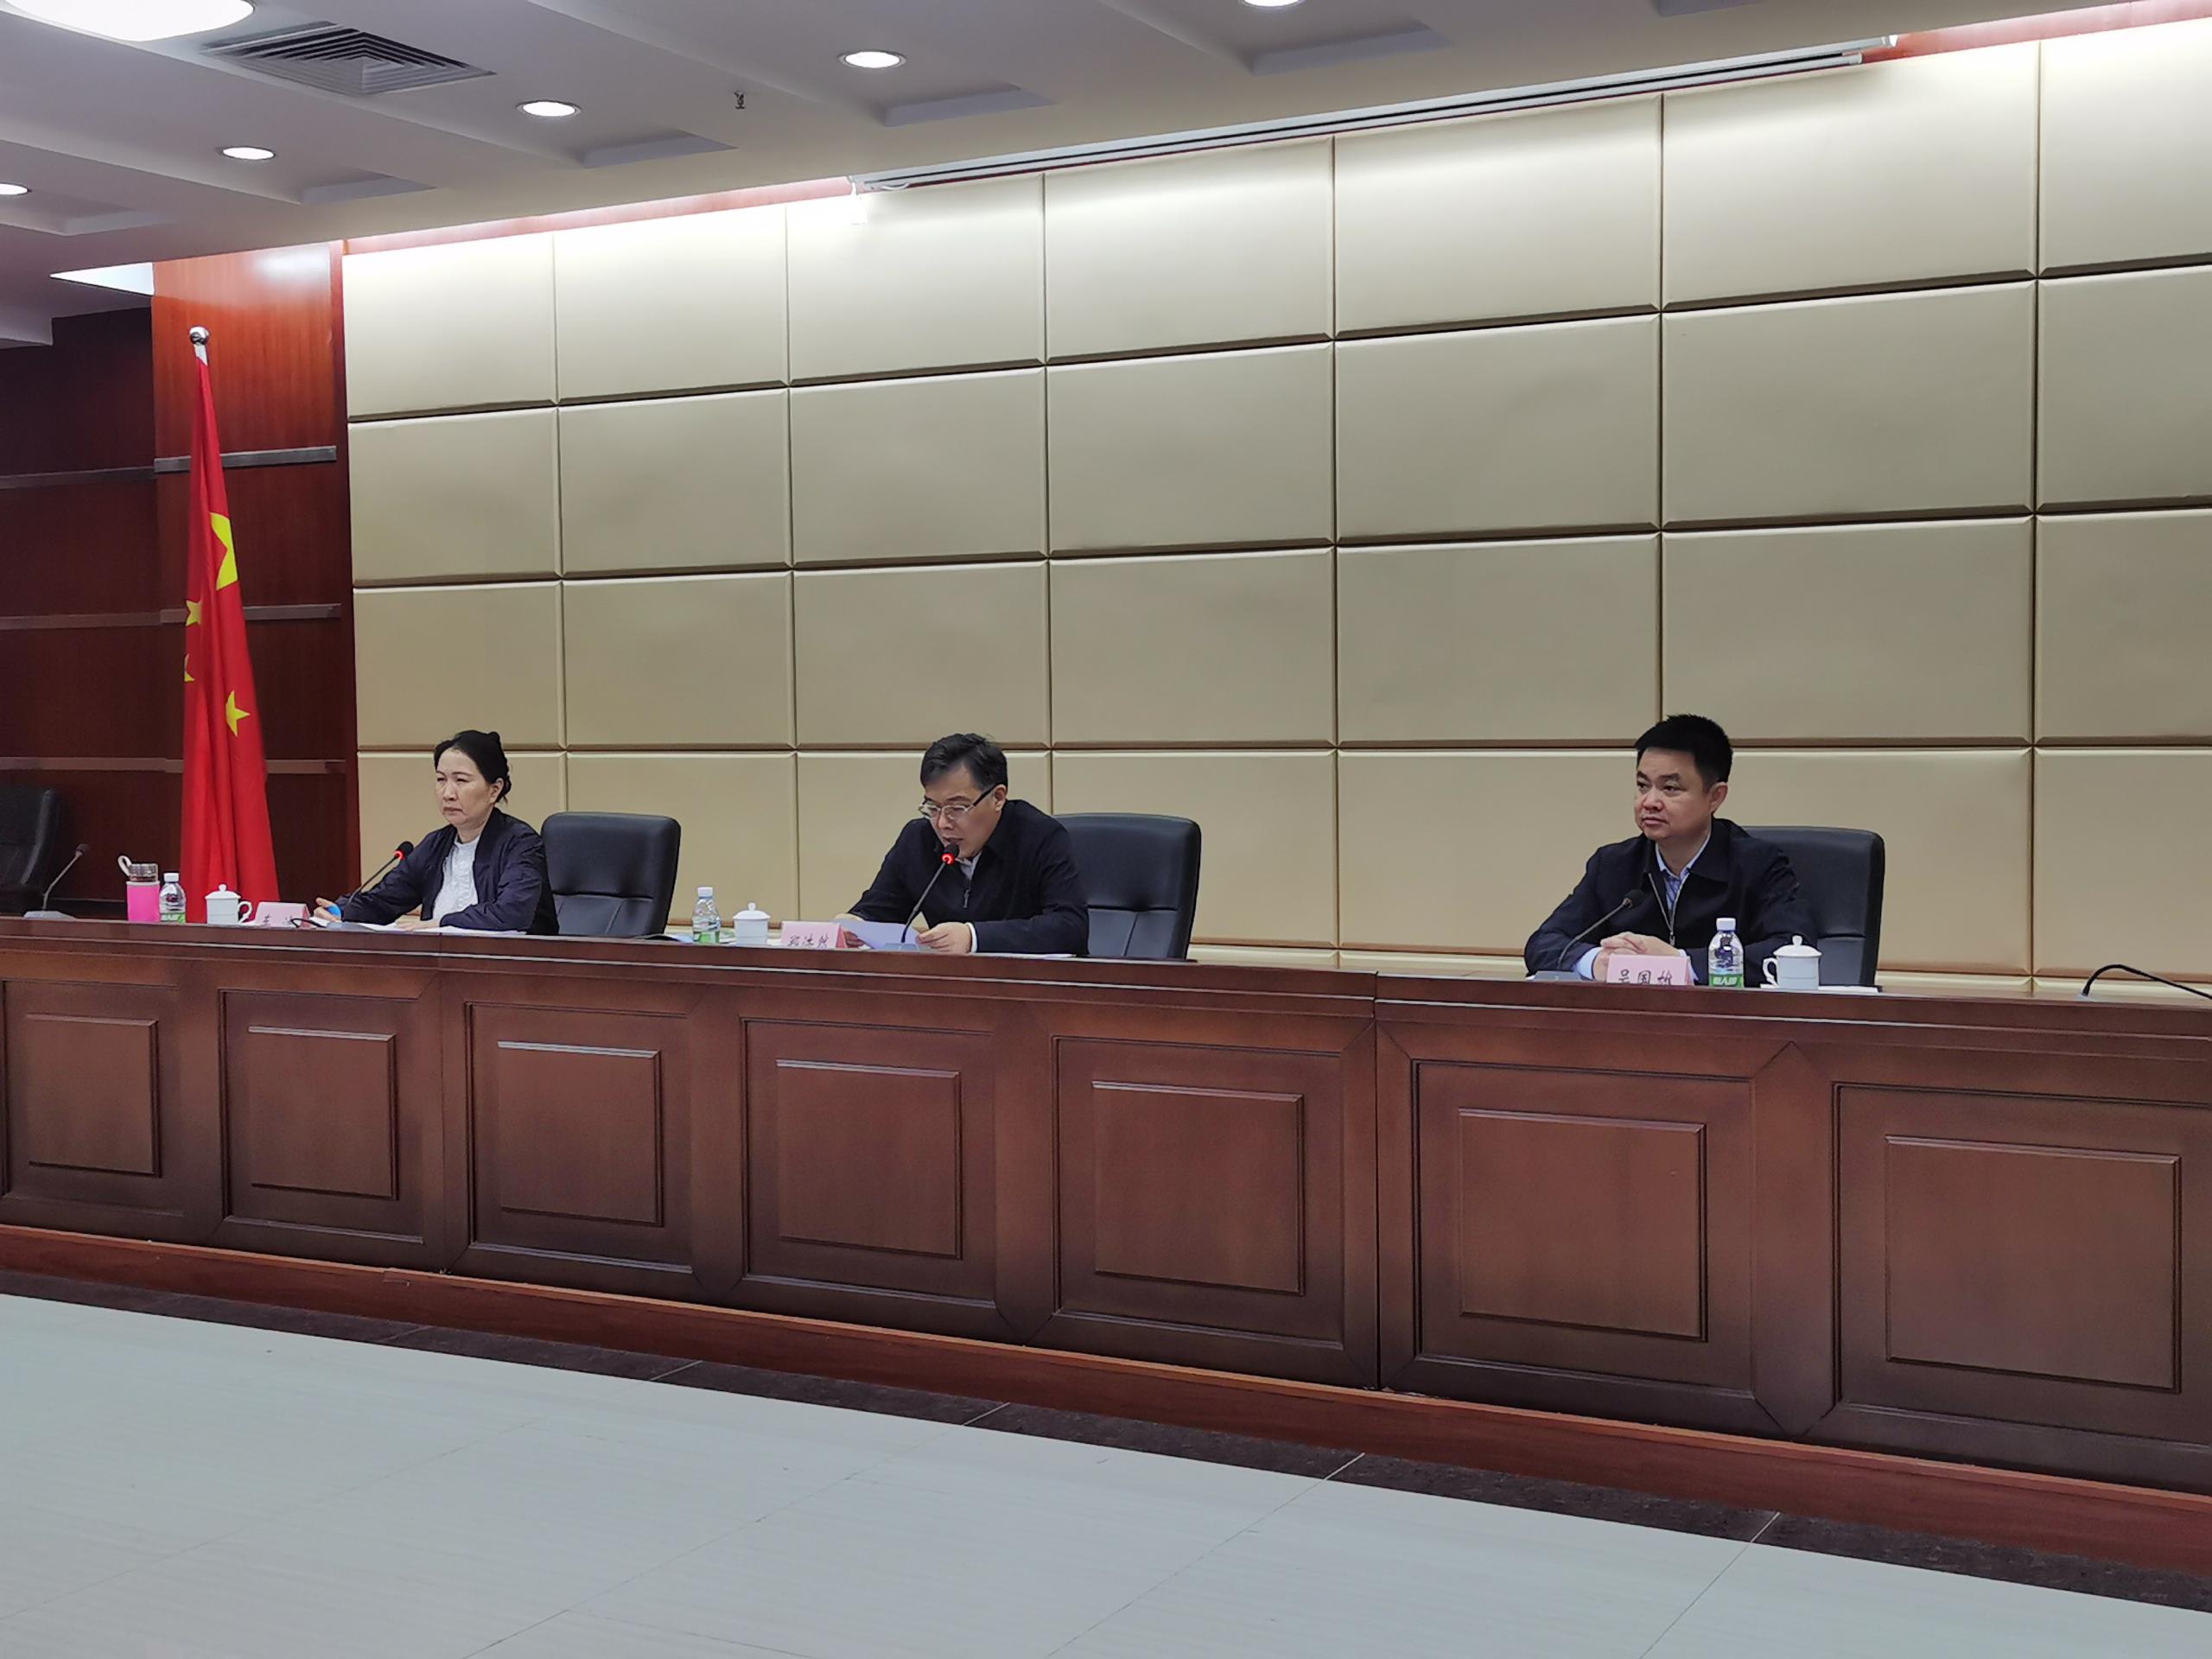 湛江市召开第四次全国文物普查领导小组第一次会议暨动员部署会